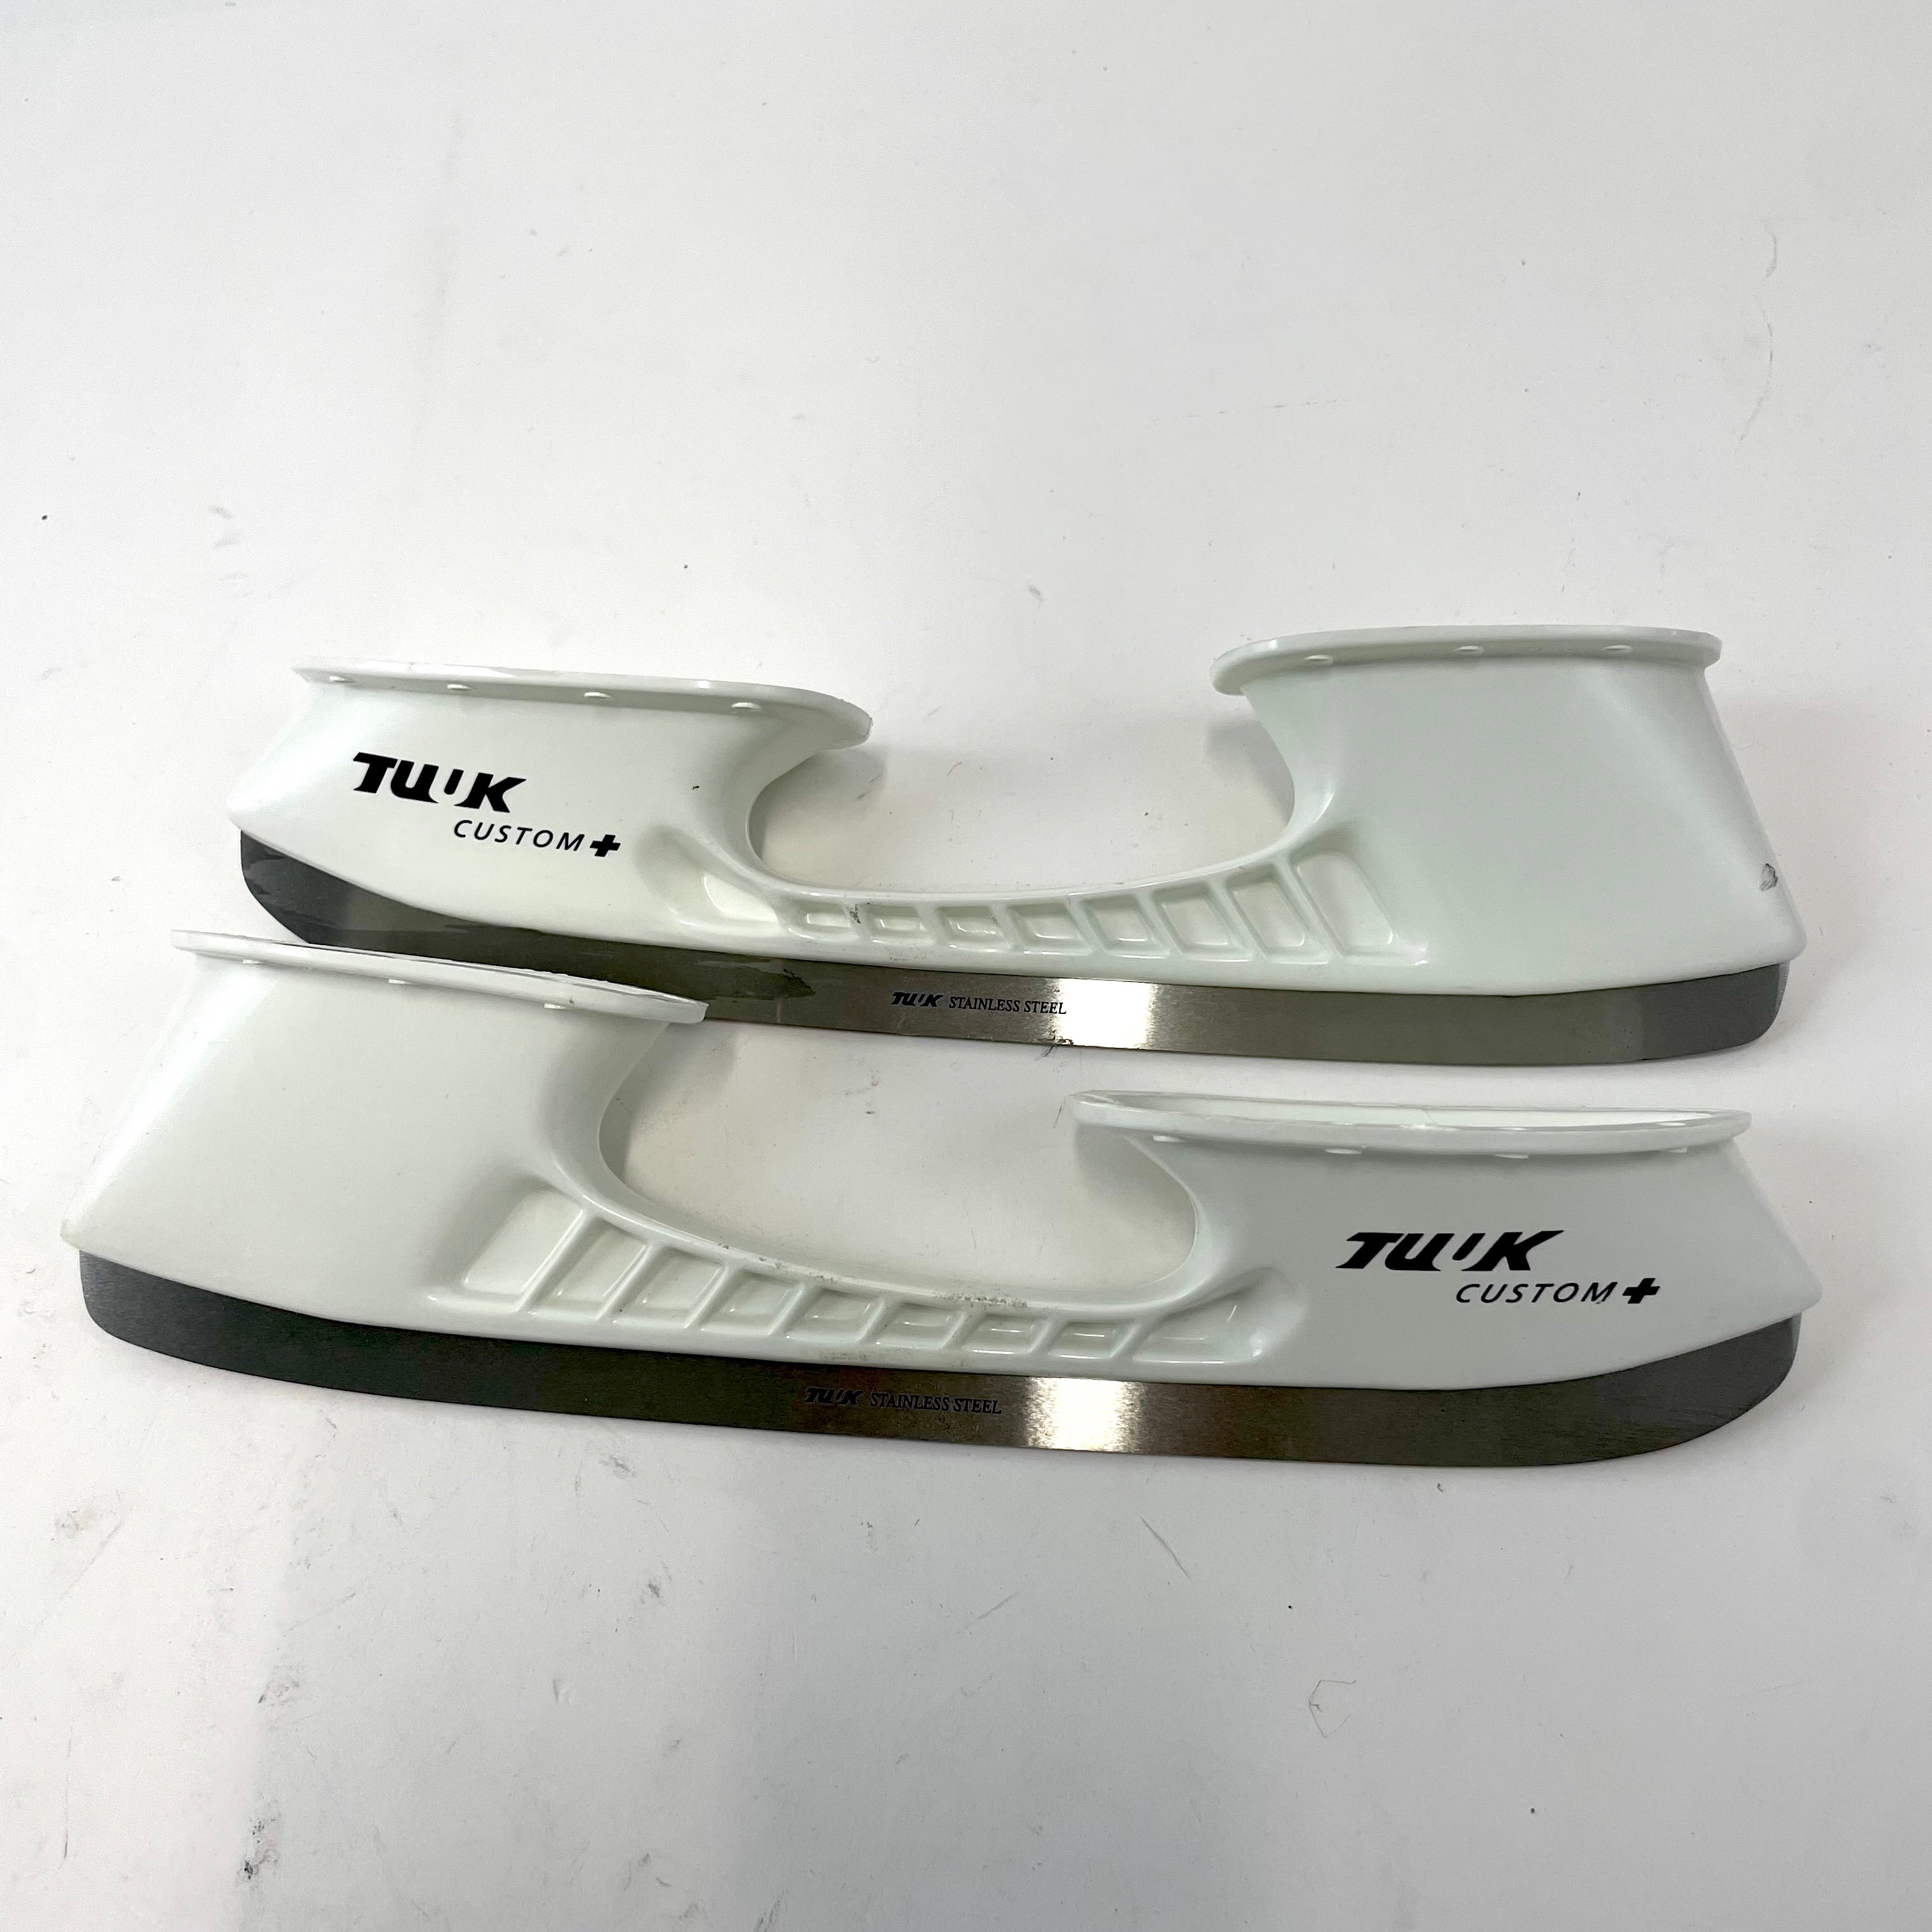 Plus Skate Holder and Runner Set Various Sizes 1103 Bauer Tuuk Custom 